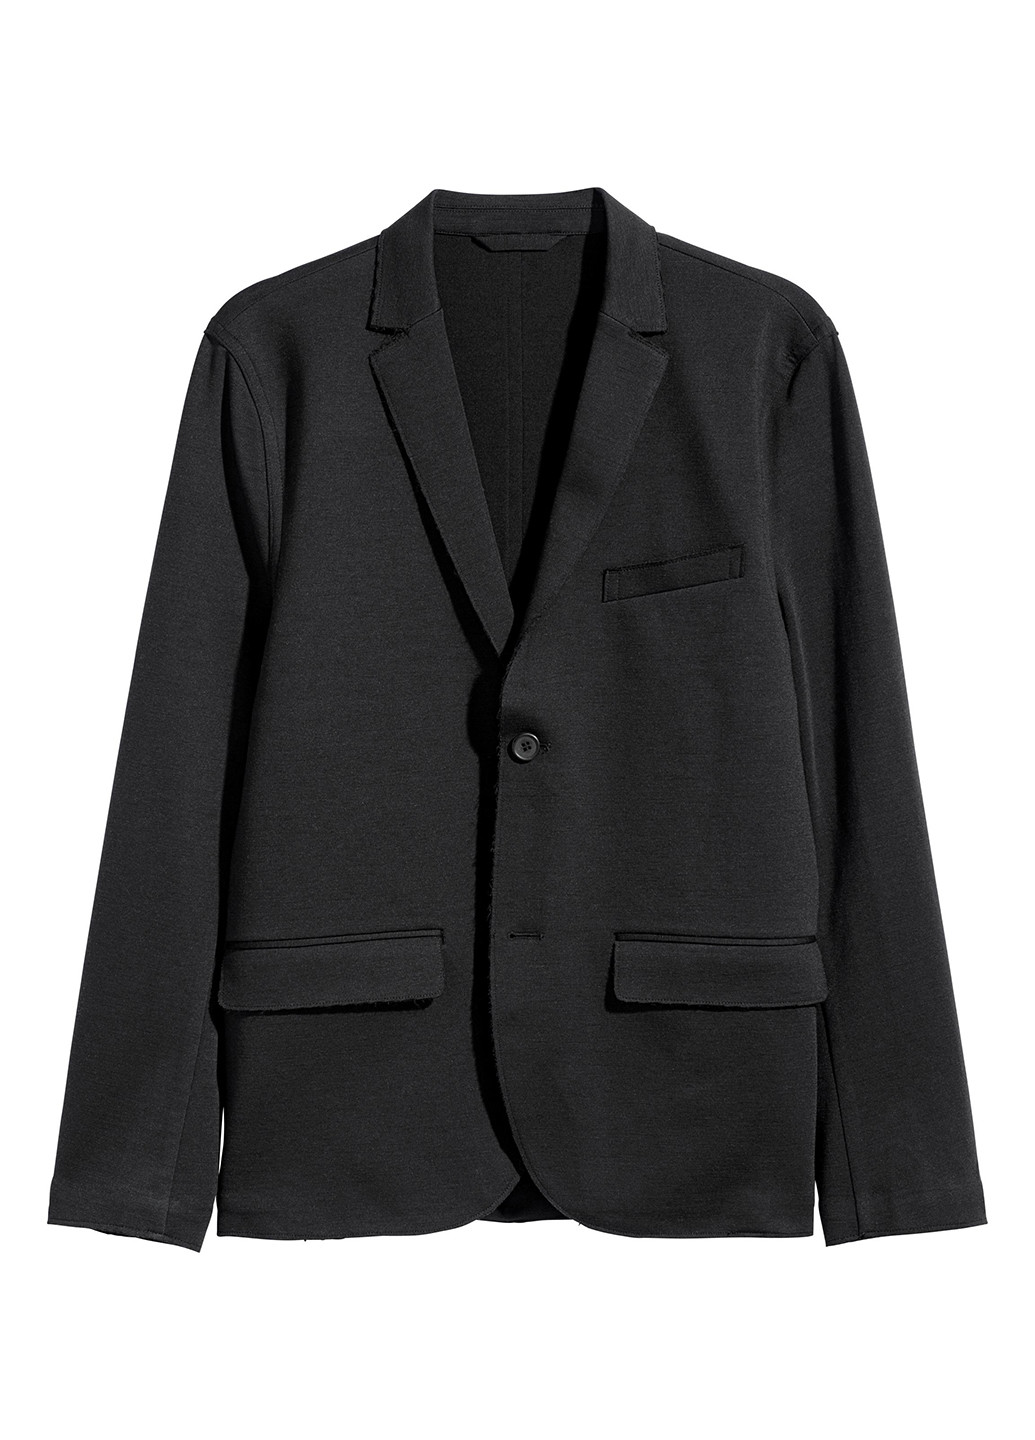 Пиджак H&M однотонный чёрный деловой шерсть, хлопок, полиамид